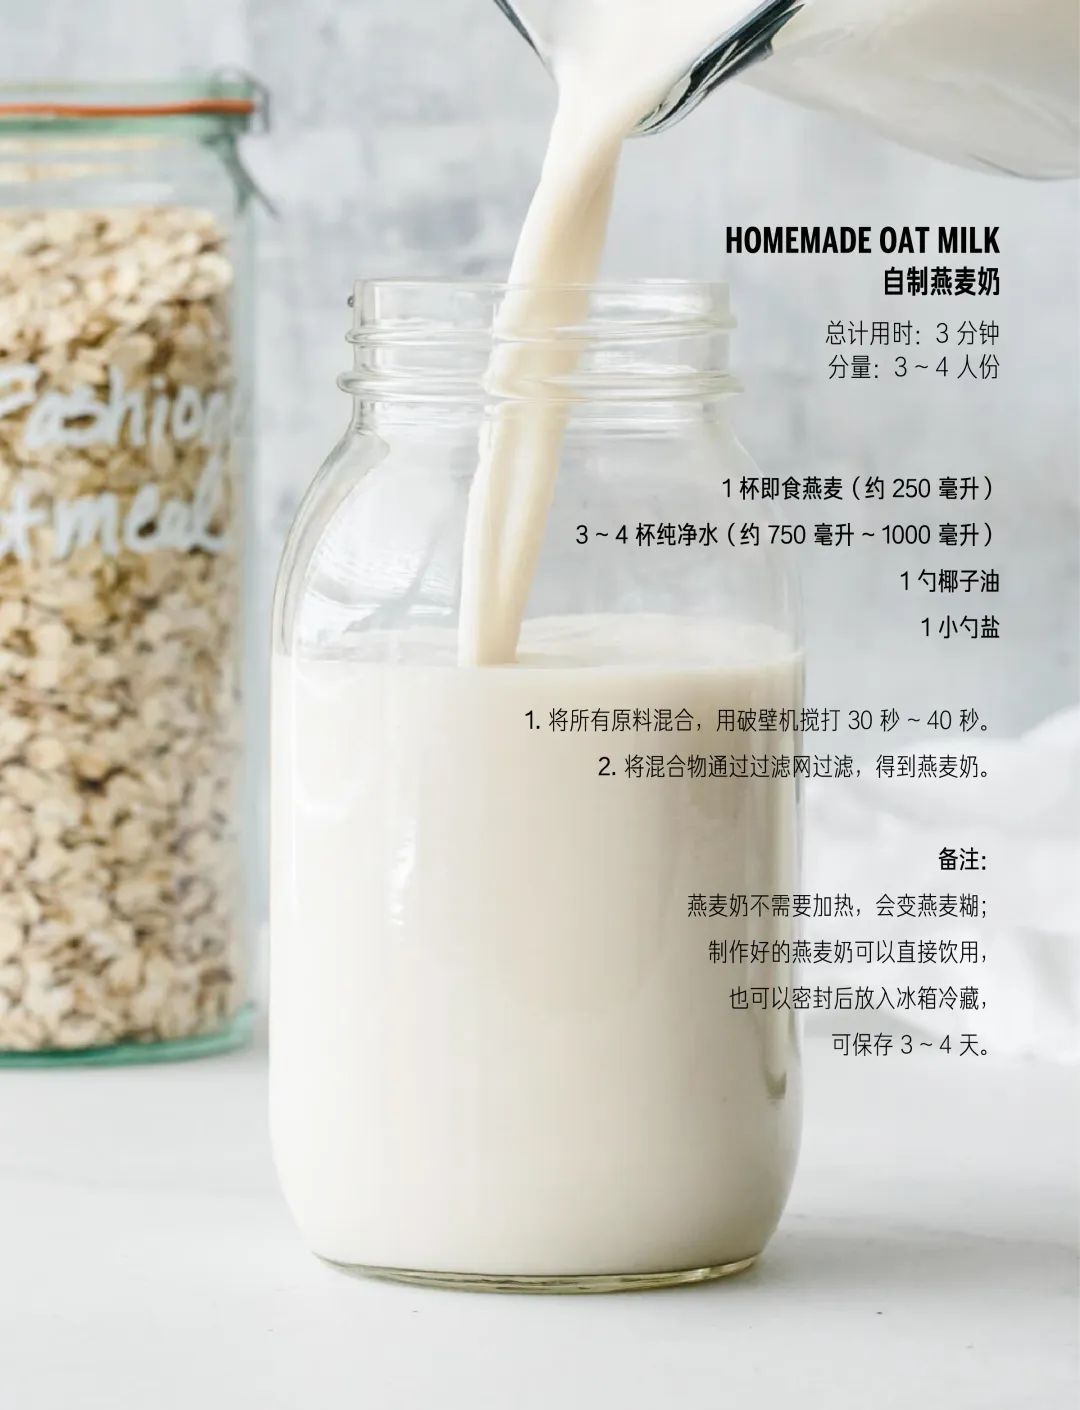 燕麦牛奶 - 济源市优洋饮品有限公司（官网）